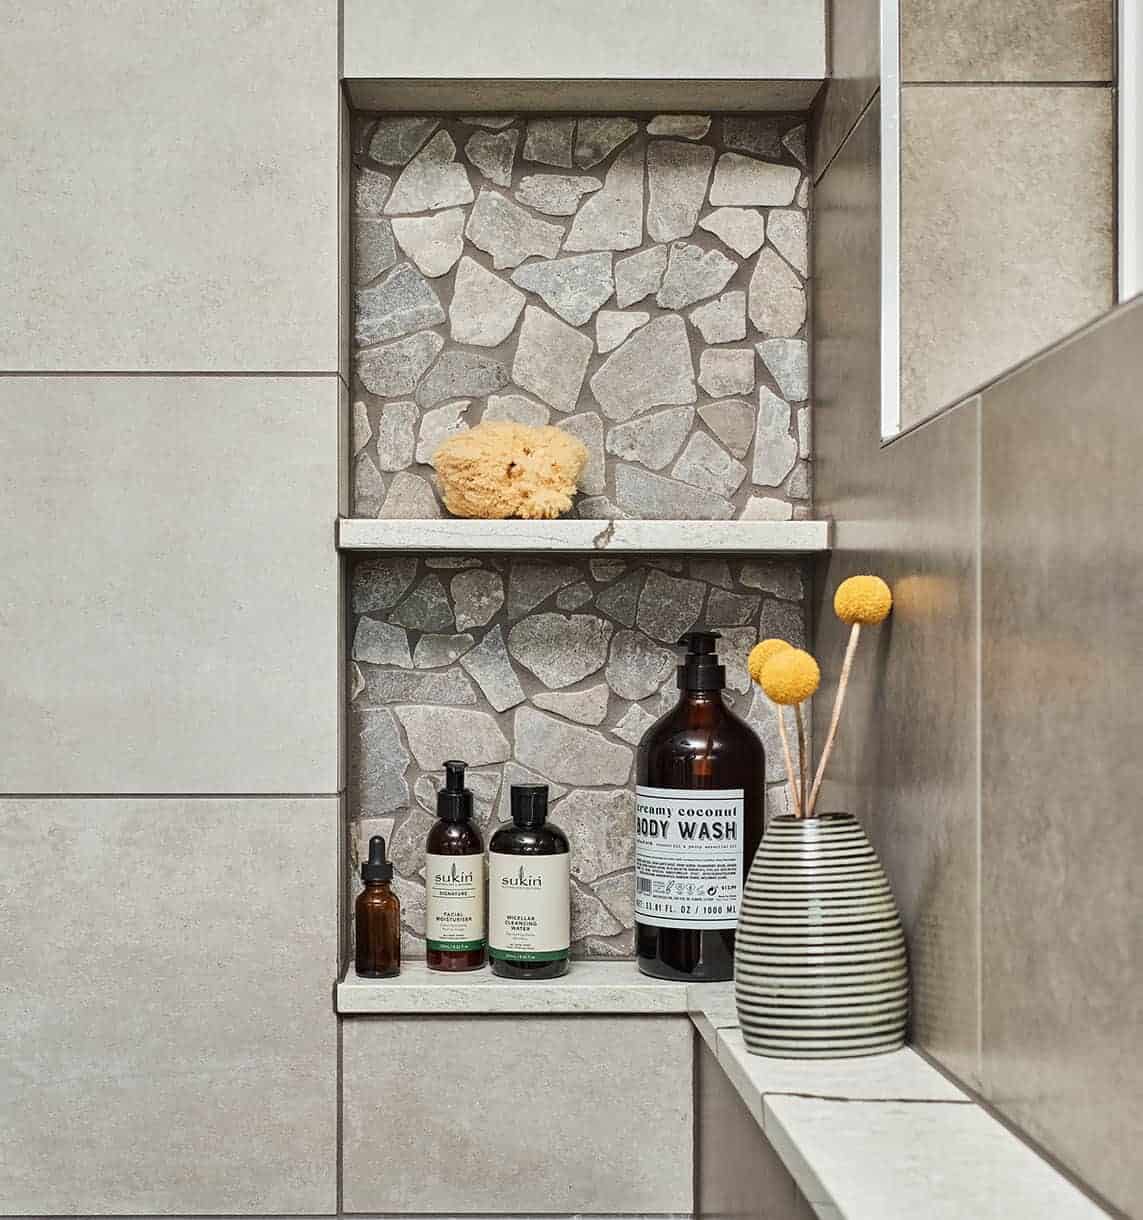 shower niche bottom shelf extends as a ledge